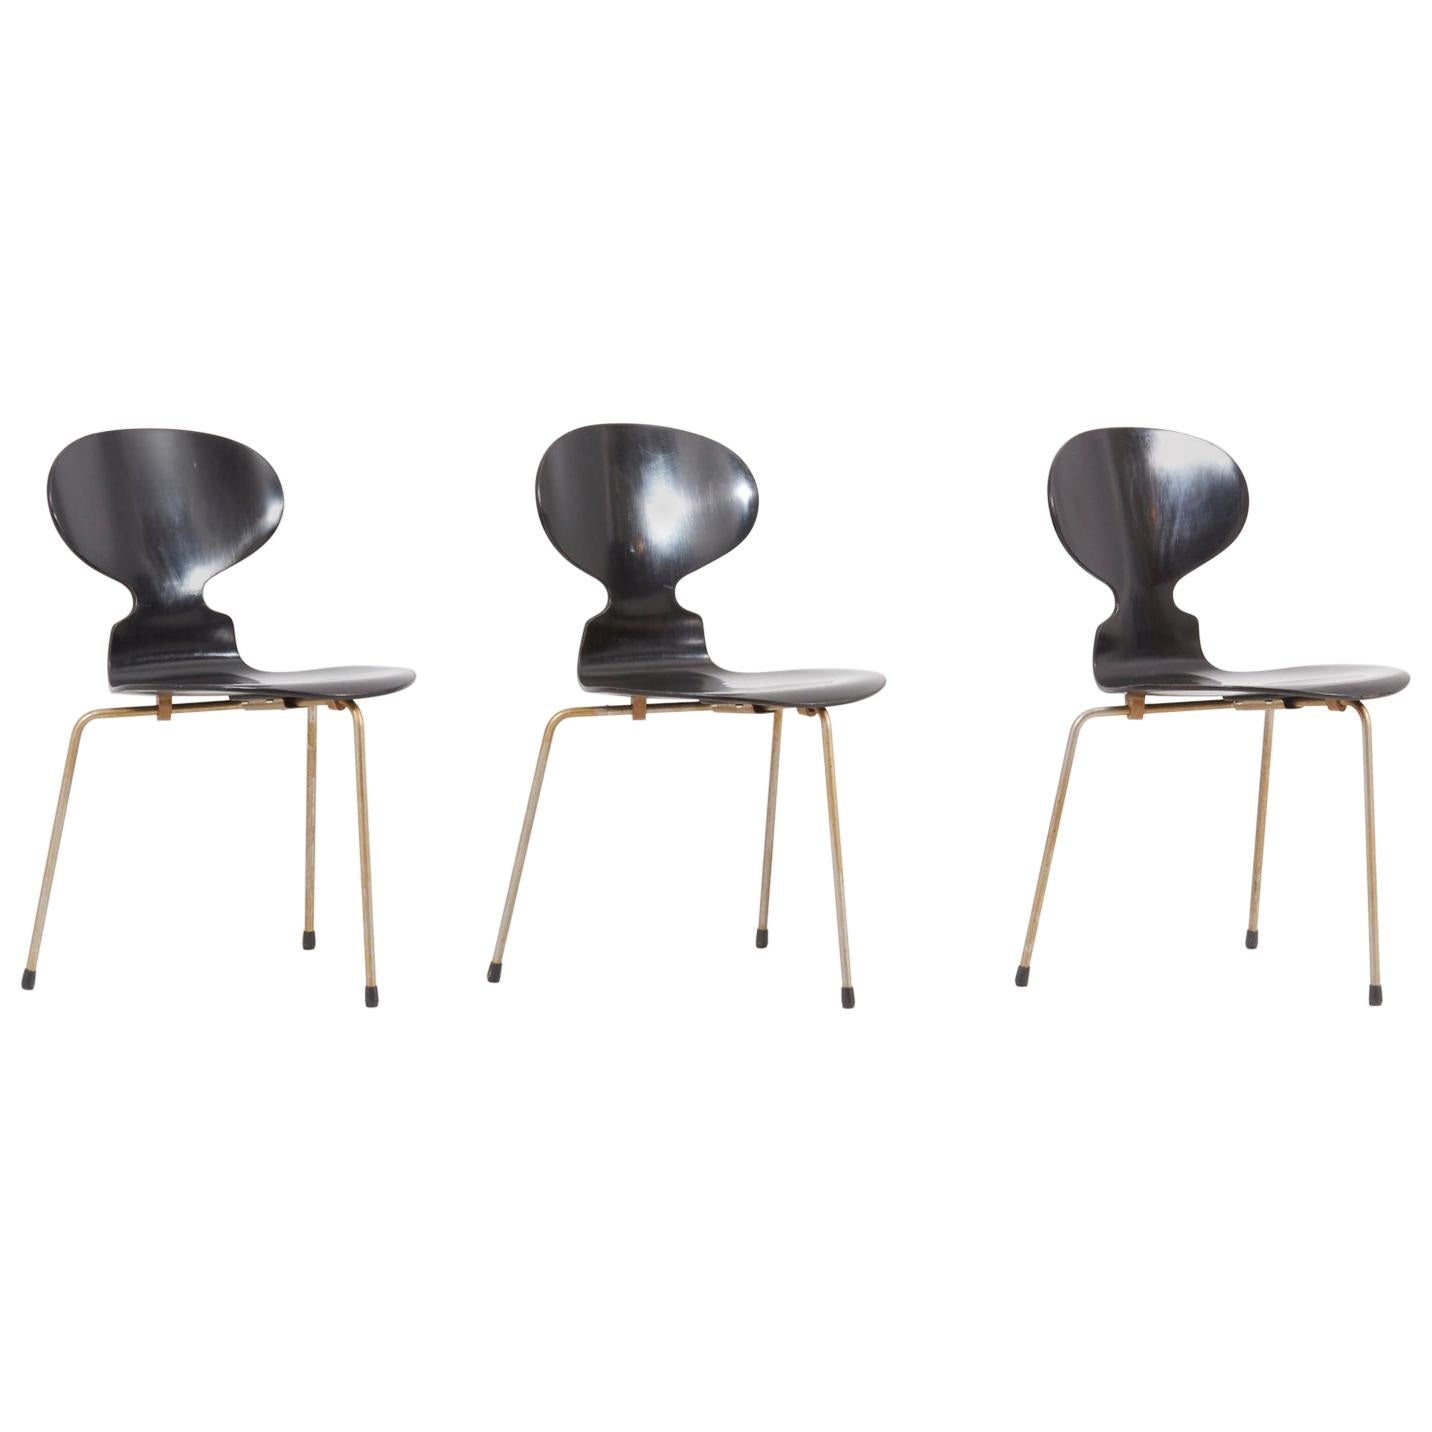 Set of 3 Black Arne Jacobsen Ant Chairs for Fritz Hansen, Denmark, 1950s